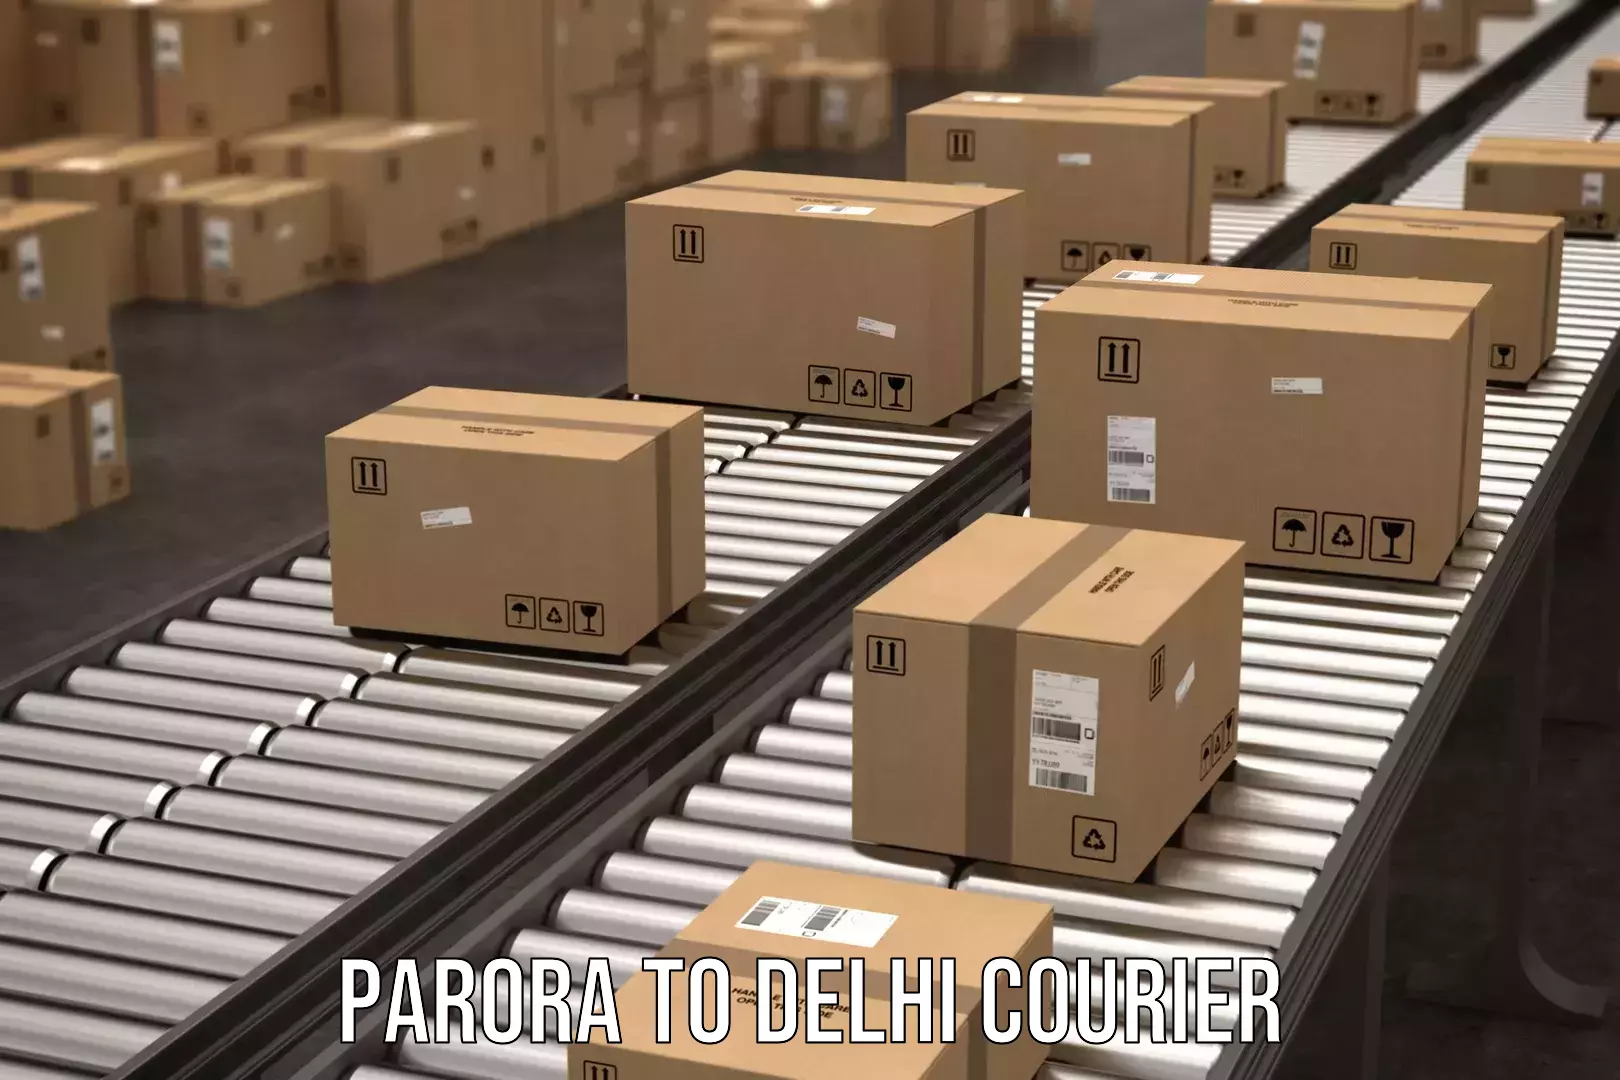 Customer-centric shipping in Parora to East Delhi